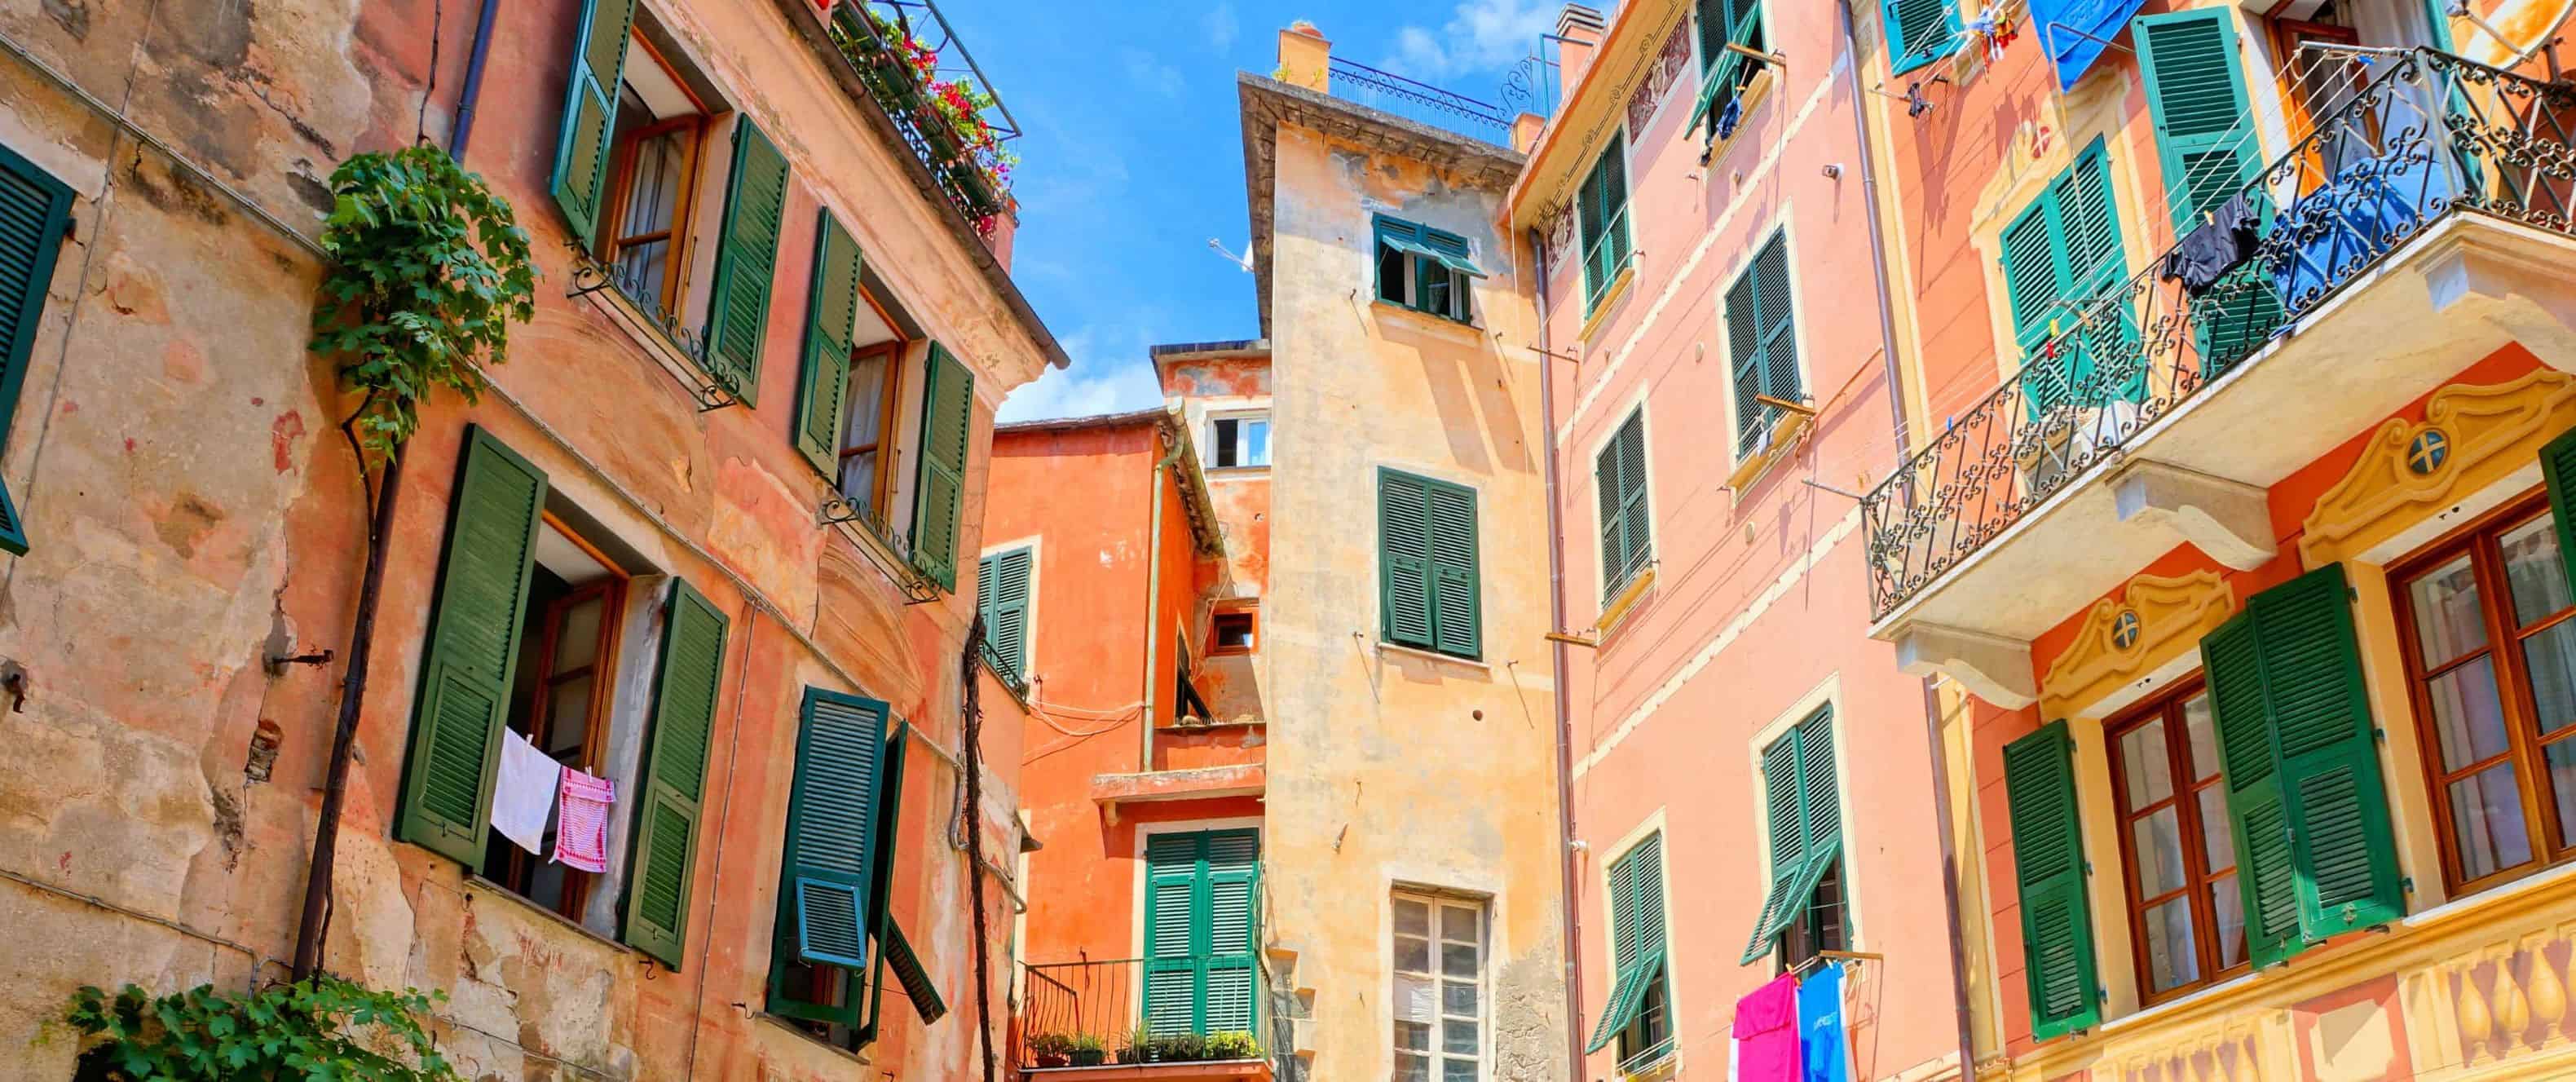 Edifícios laranja multicoloridos e uma pequena área com um restaurante em chinkve-terre, Itália.